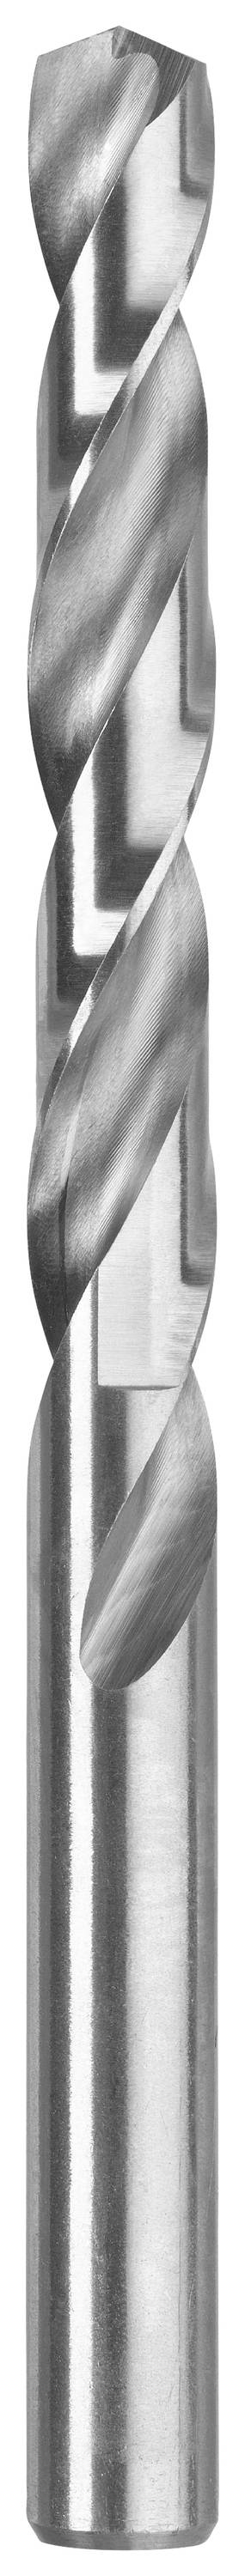 KWB 206542 Metall-Spiralbohrer 4.2 mm 1 Stück (206542)